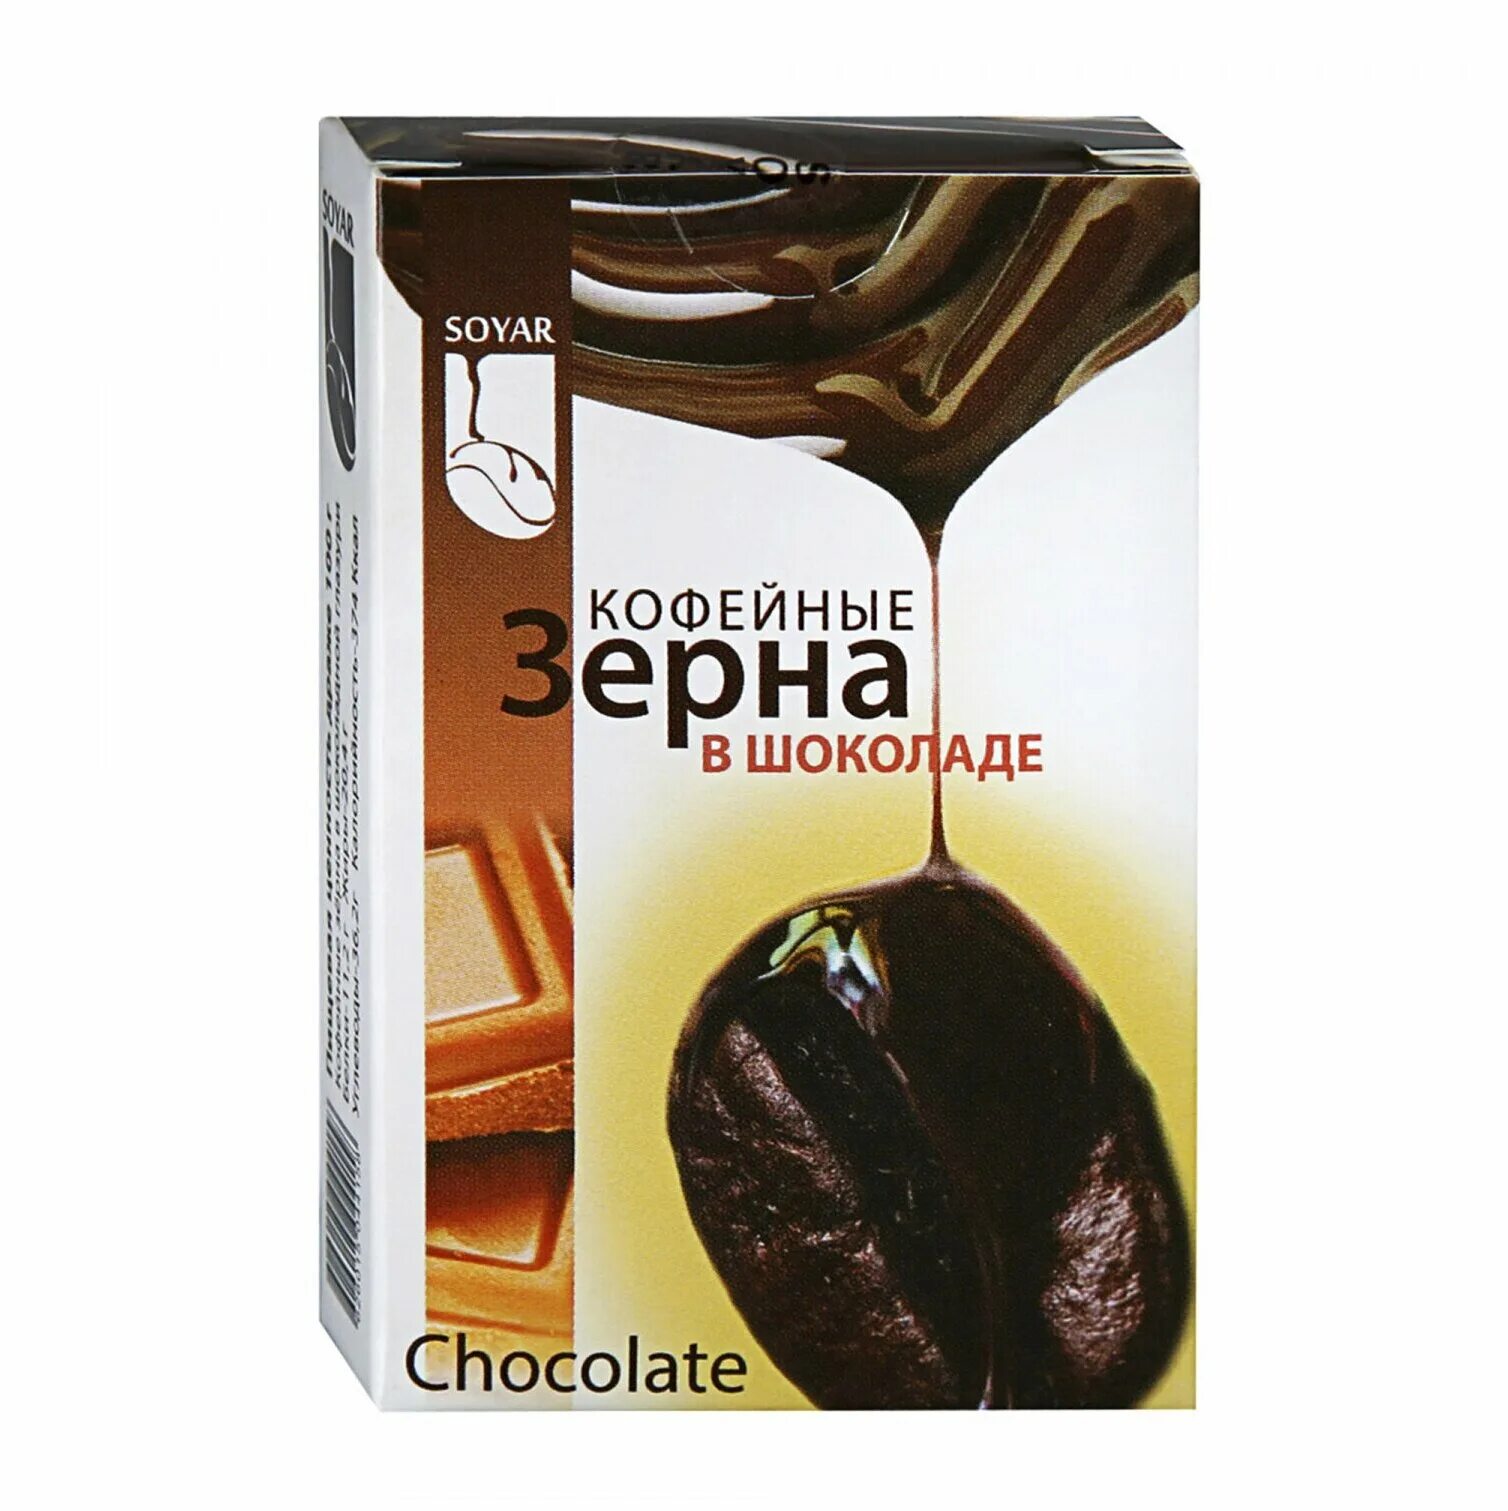 Зерна шоколада. Драже cioccafe Cappuccino кофейные зерна в Молочном шоколаде. Кофейные зерна soyar в шоколаде шоколад. Шоколад 25г. Зернышки в шоколаде.